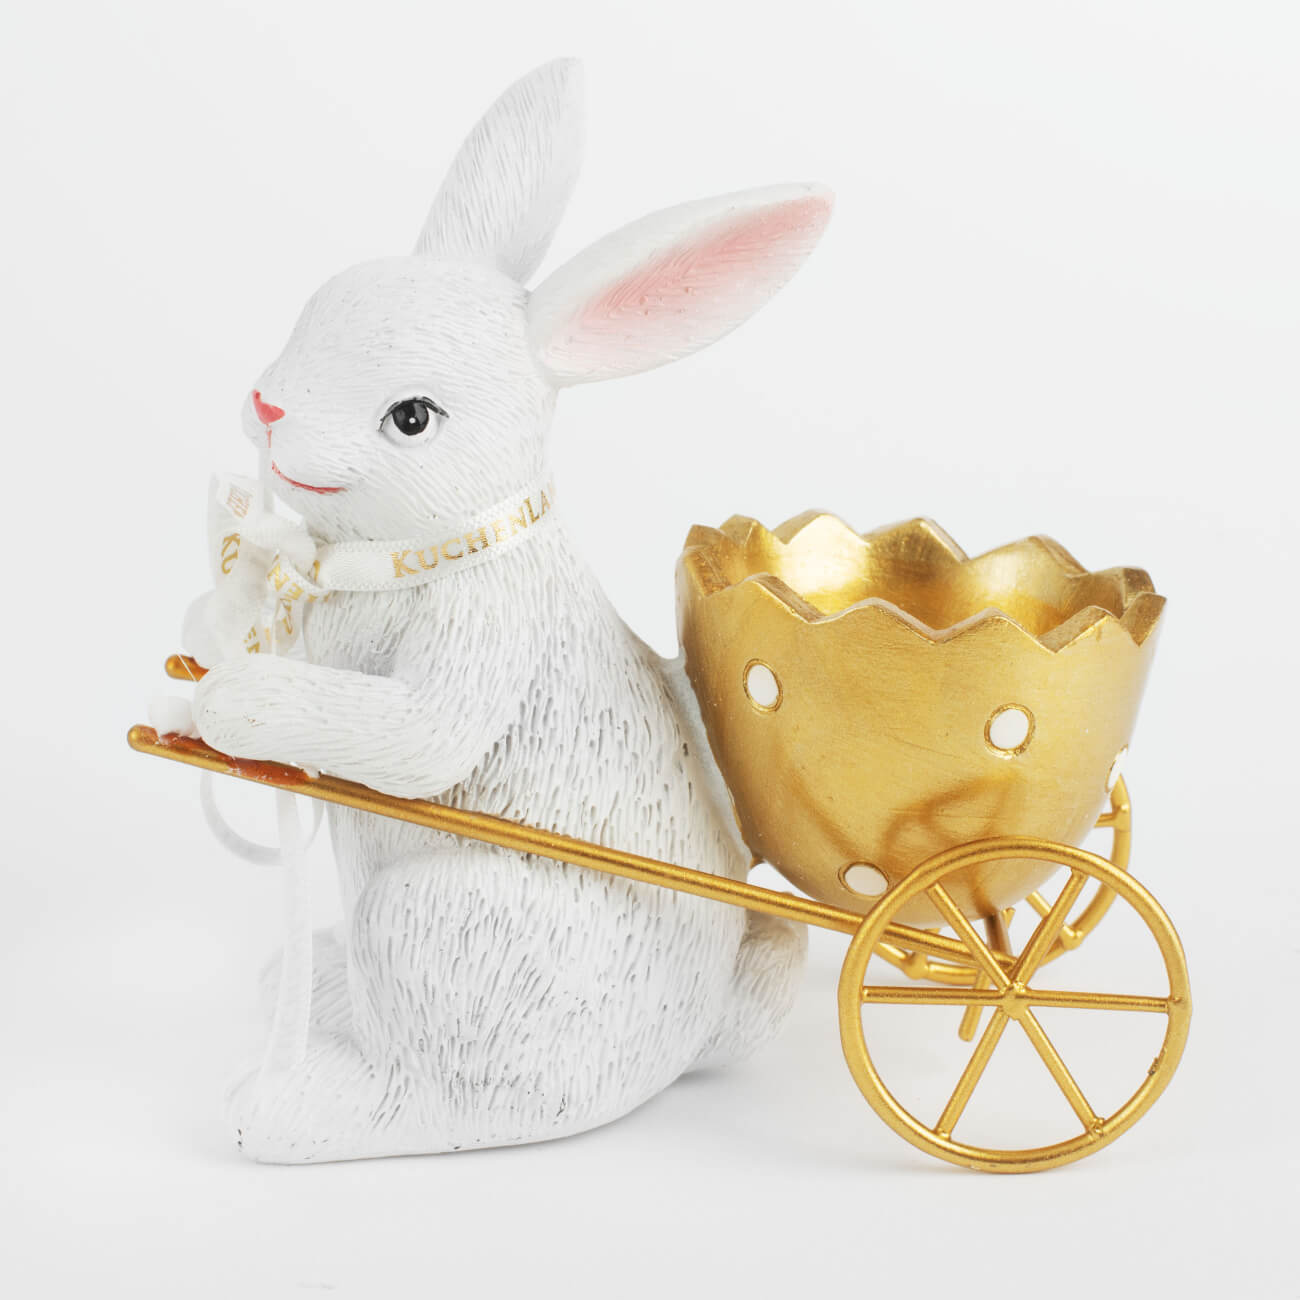 Подставка для яйца, 12 см, полирезин, бело-золотистая, Кролик с тележкой, Easter gold подставка для яйца 8х8 см дерево кролик natural easter